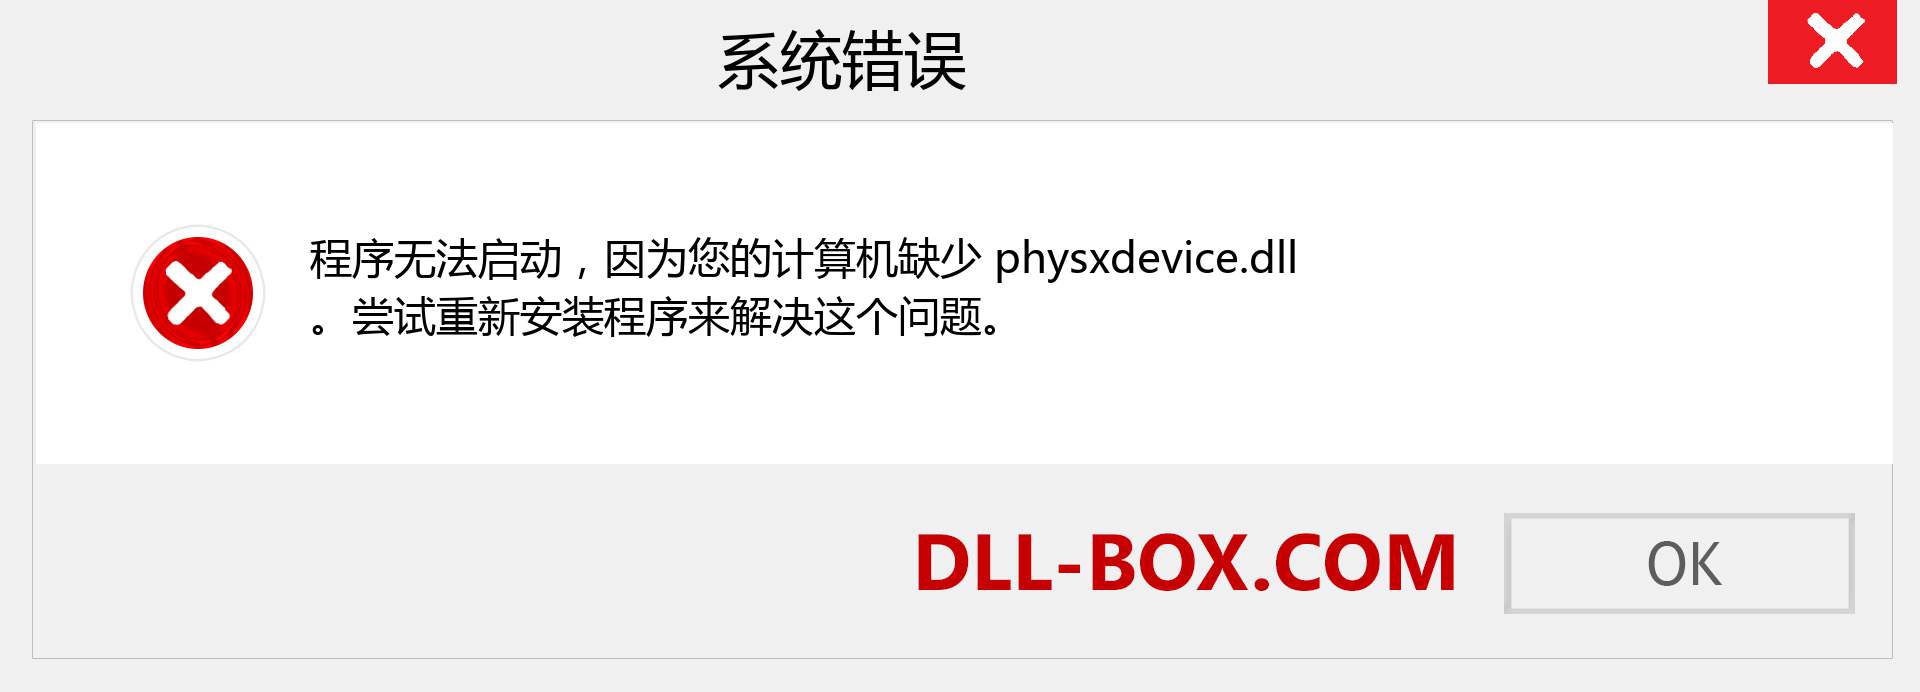 physxdevice.dll 文件丢失？。 适用于 Windows 7、8、10 的下载 - 修复 Windows、照片、图像上的 physxdevice dll 丢失错误